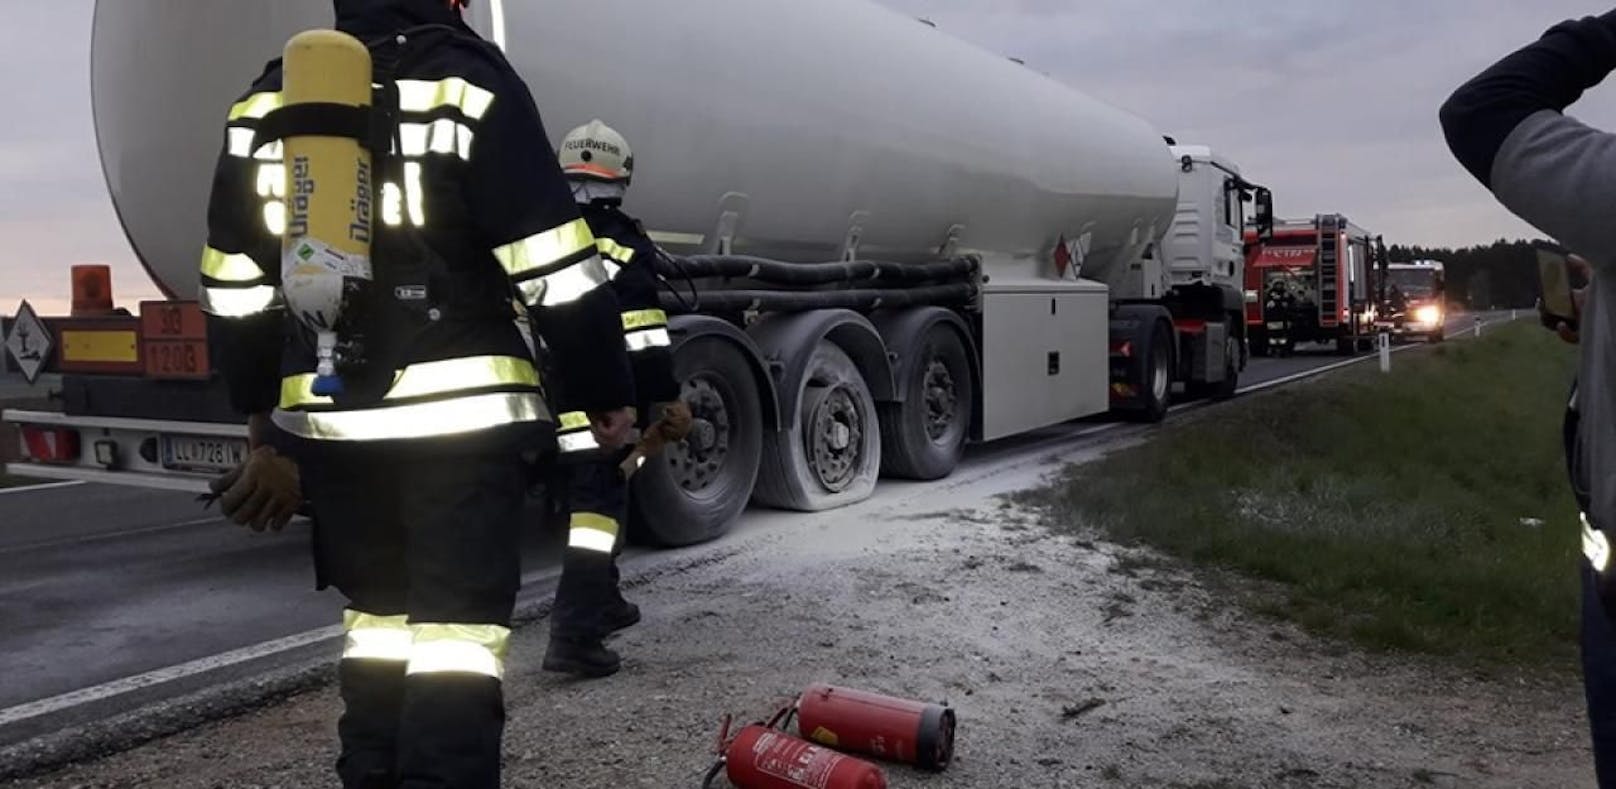 Reifen von Tankwagen fing während der Fahrt Feuer